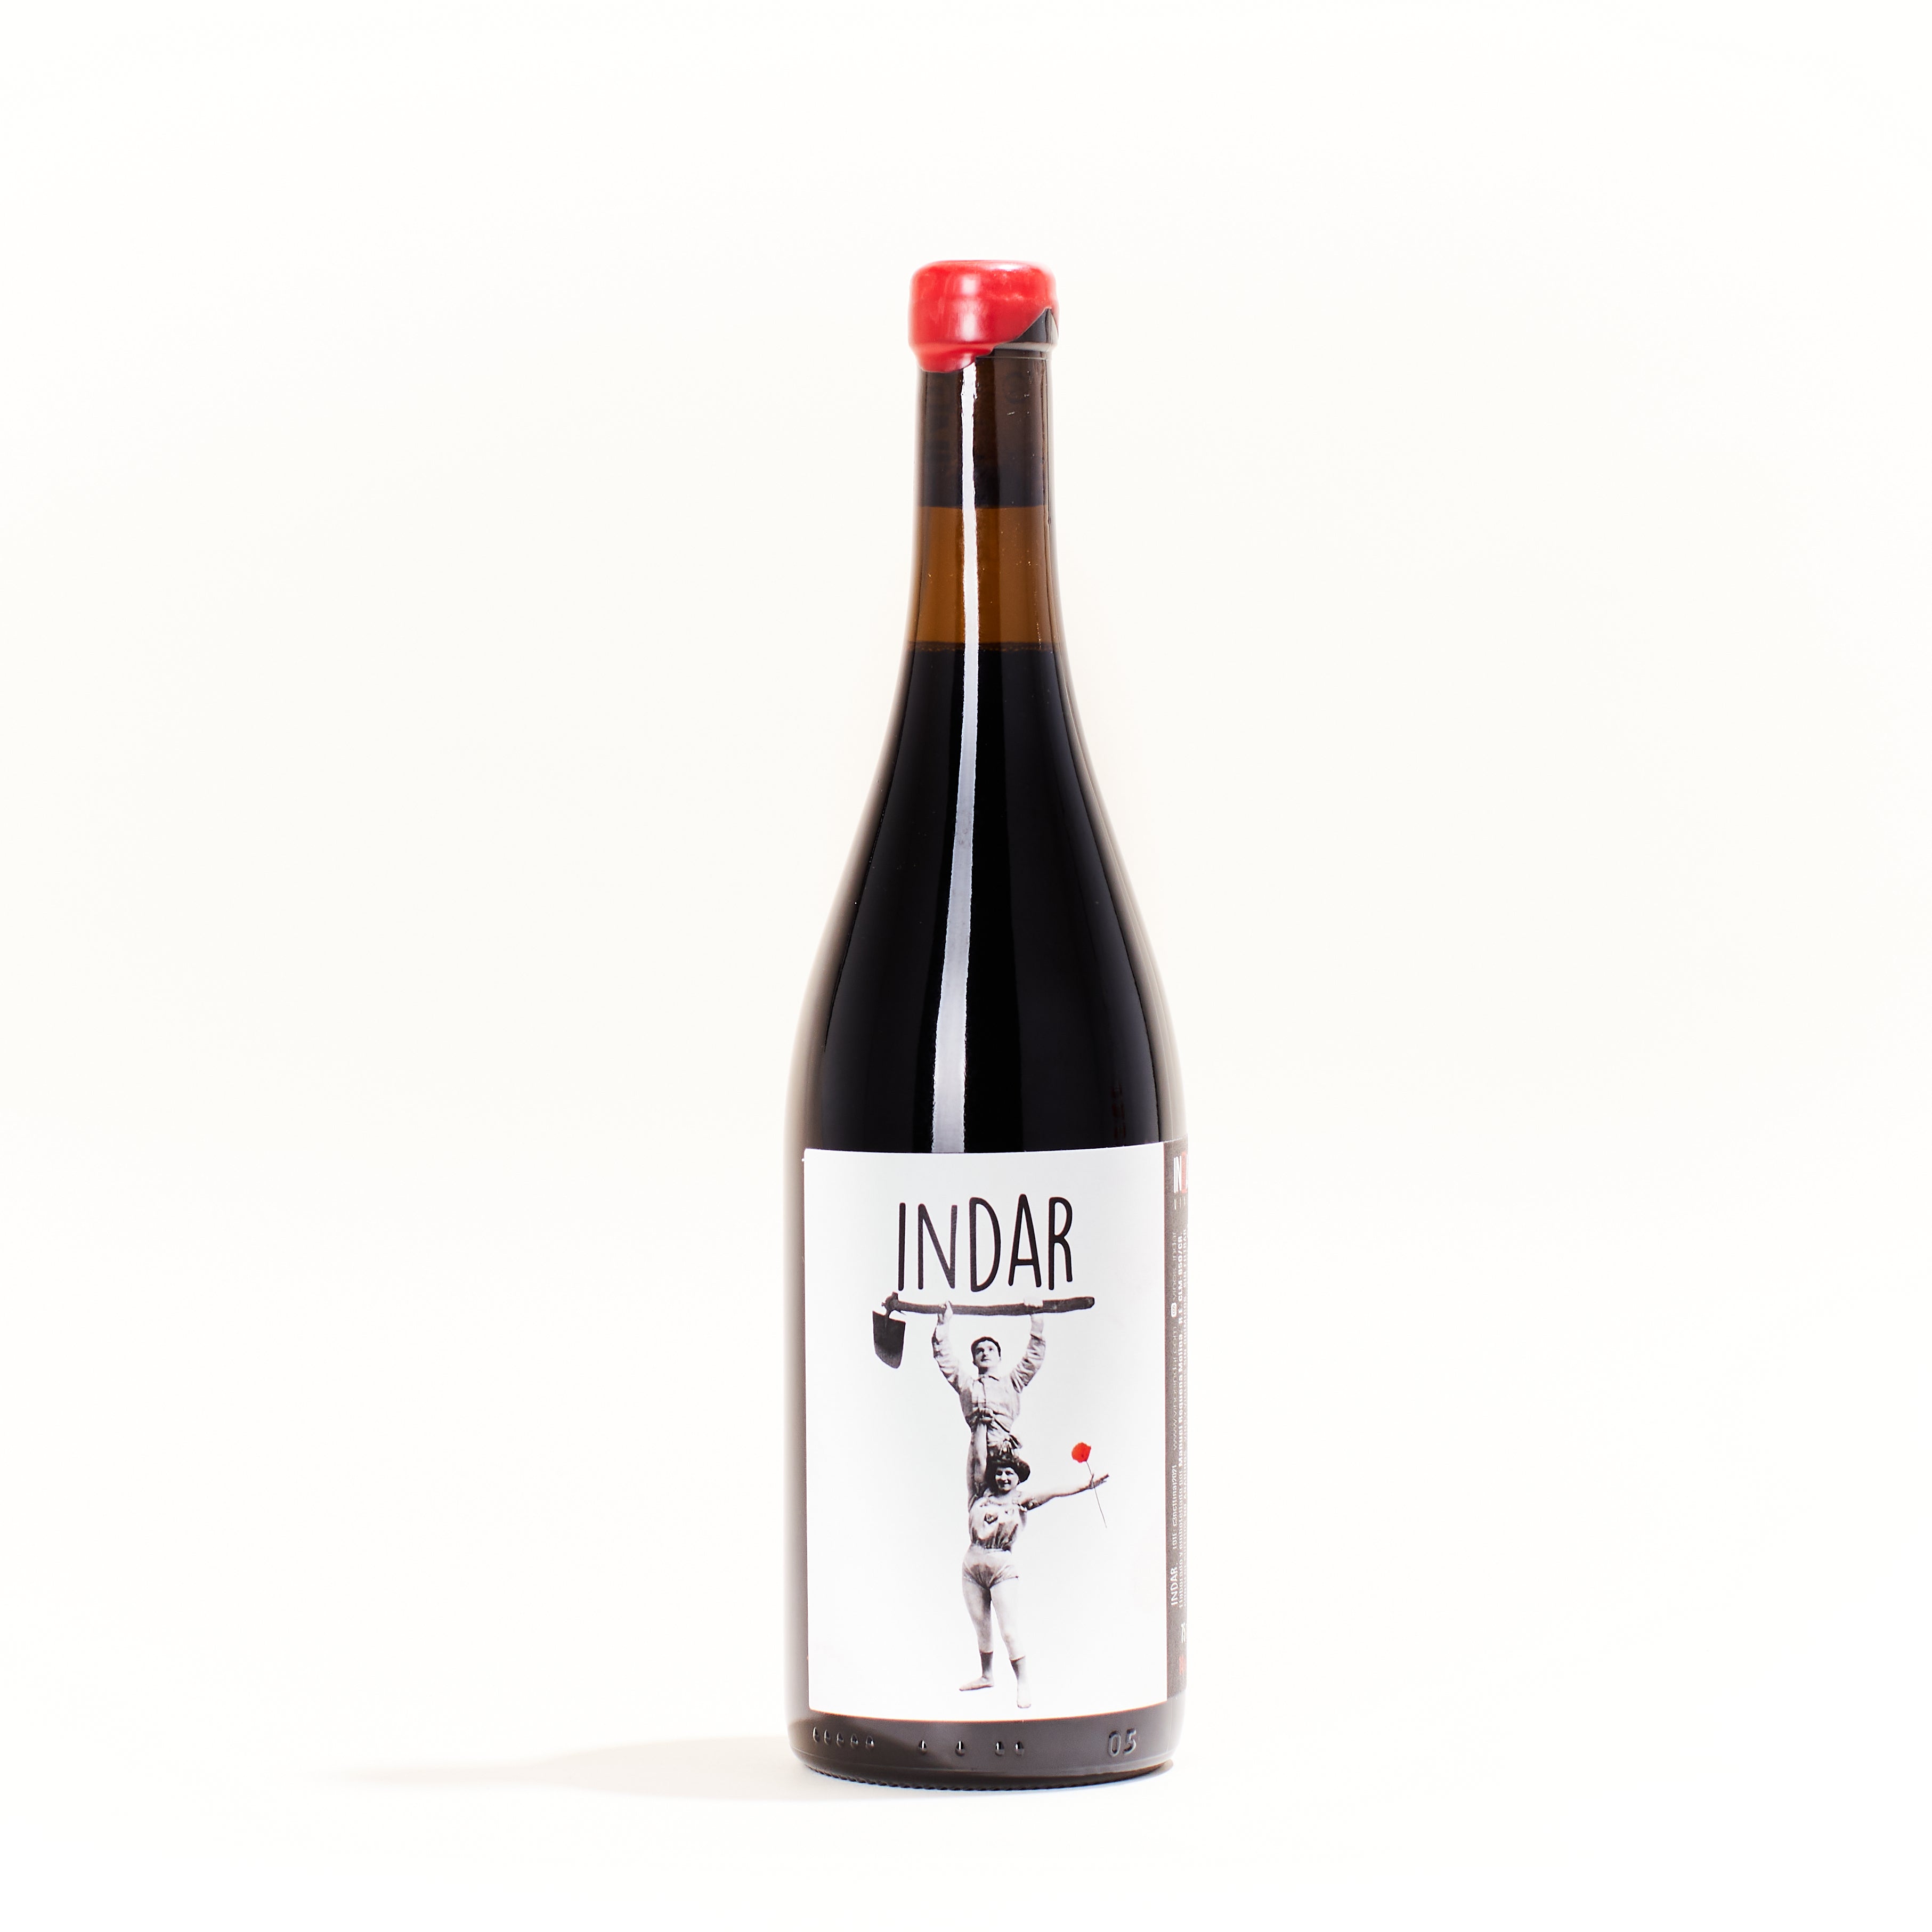 Vinos Indar Indar Cencibel  Parellada natural red wine Castilla-La Mancha Spain